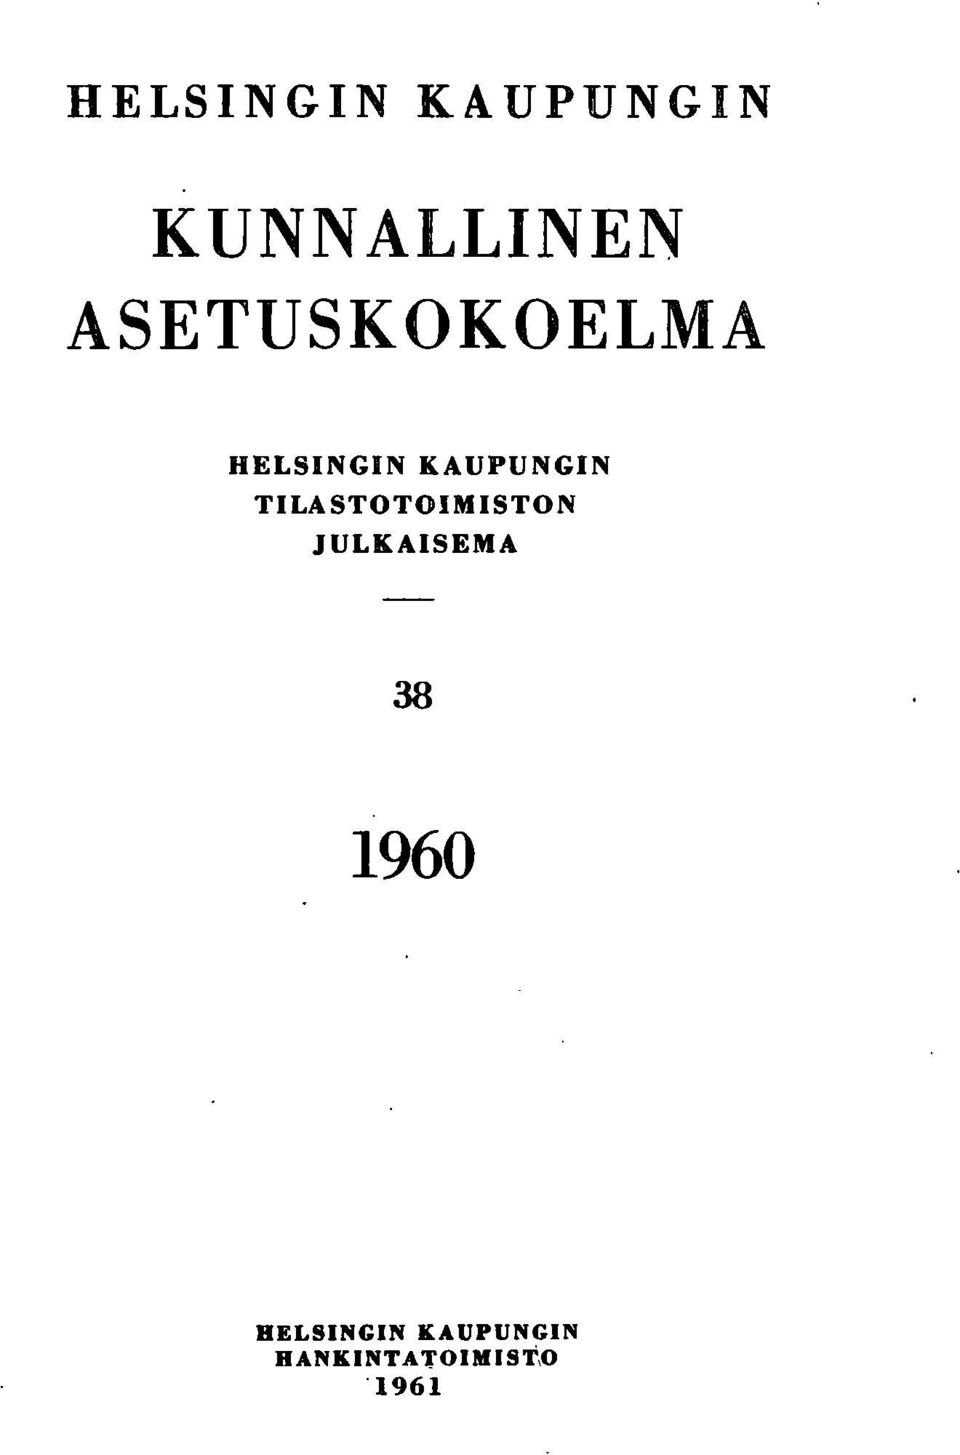 TILASTOTOIMISTON JULKAISEMA 38 1960